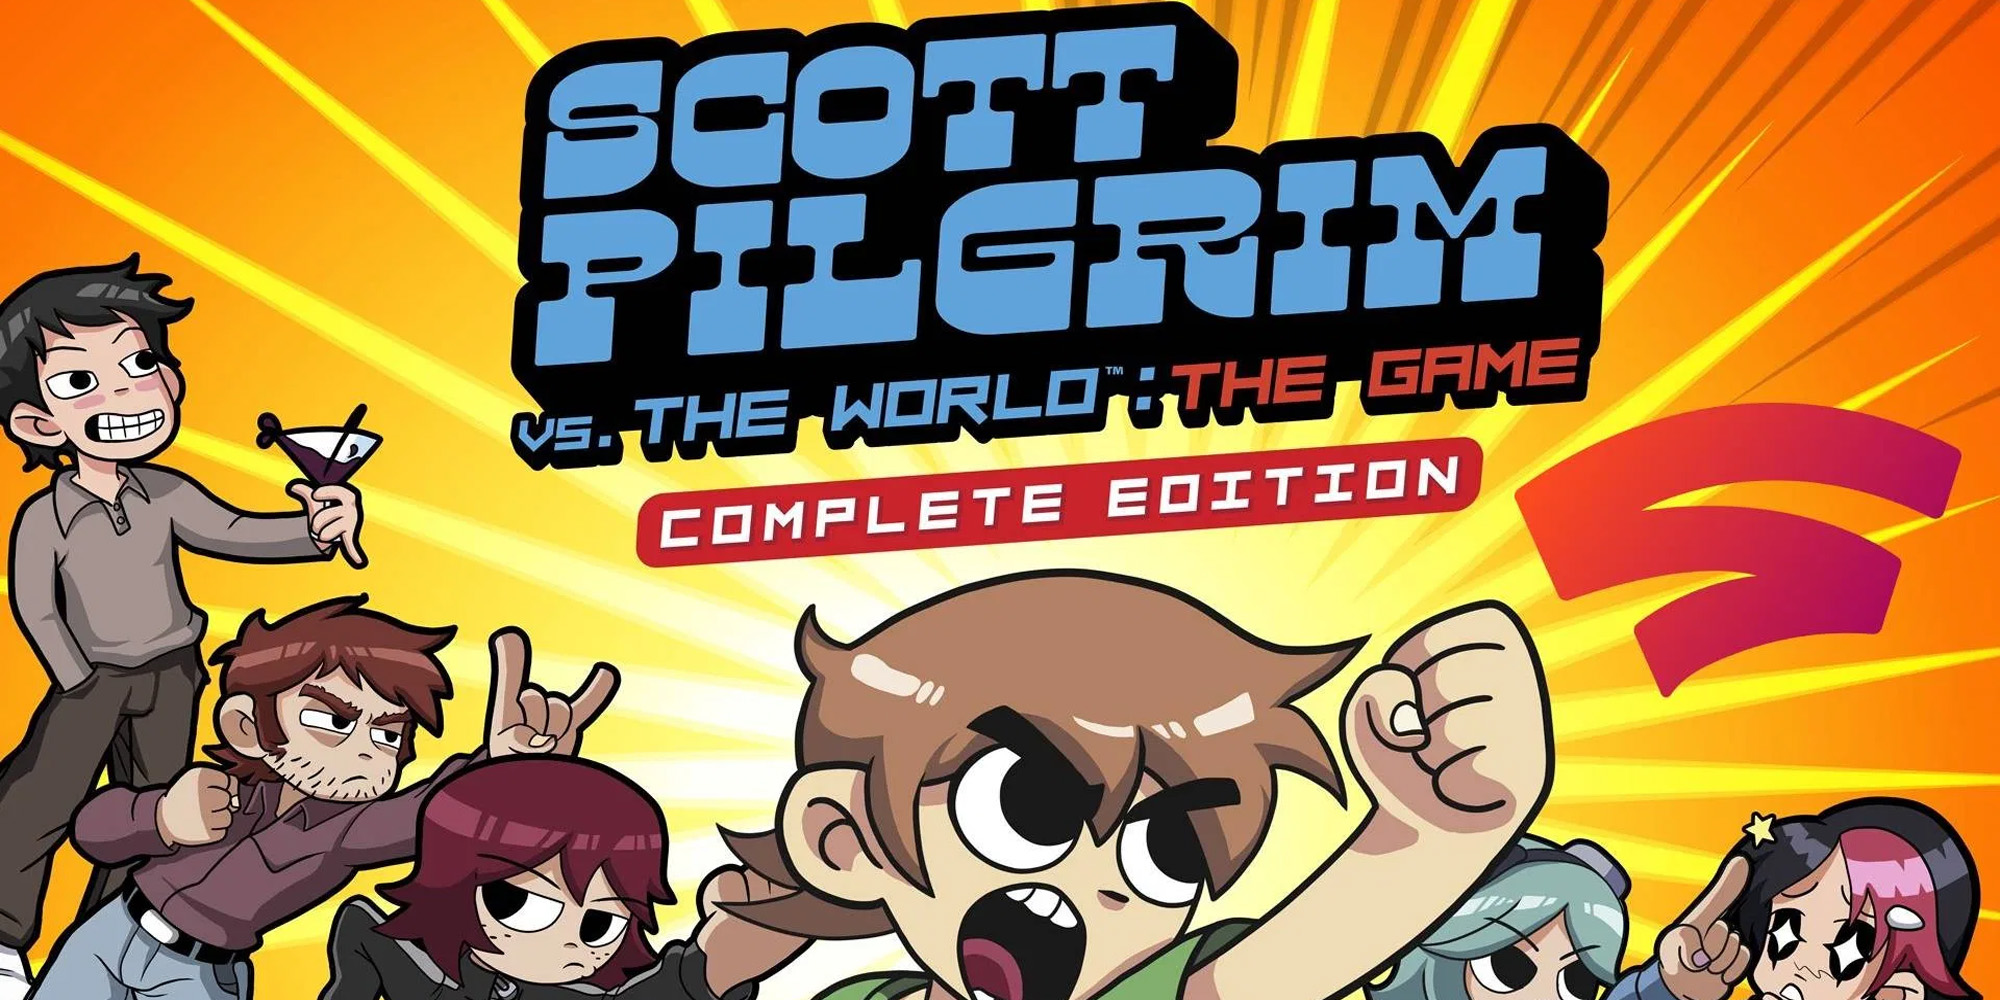 scott pilgrim vs the world the game pc version